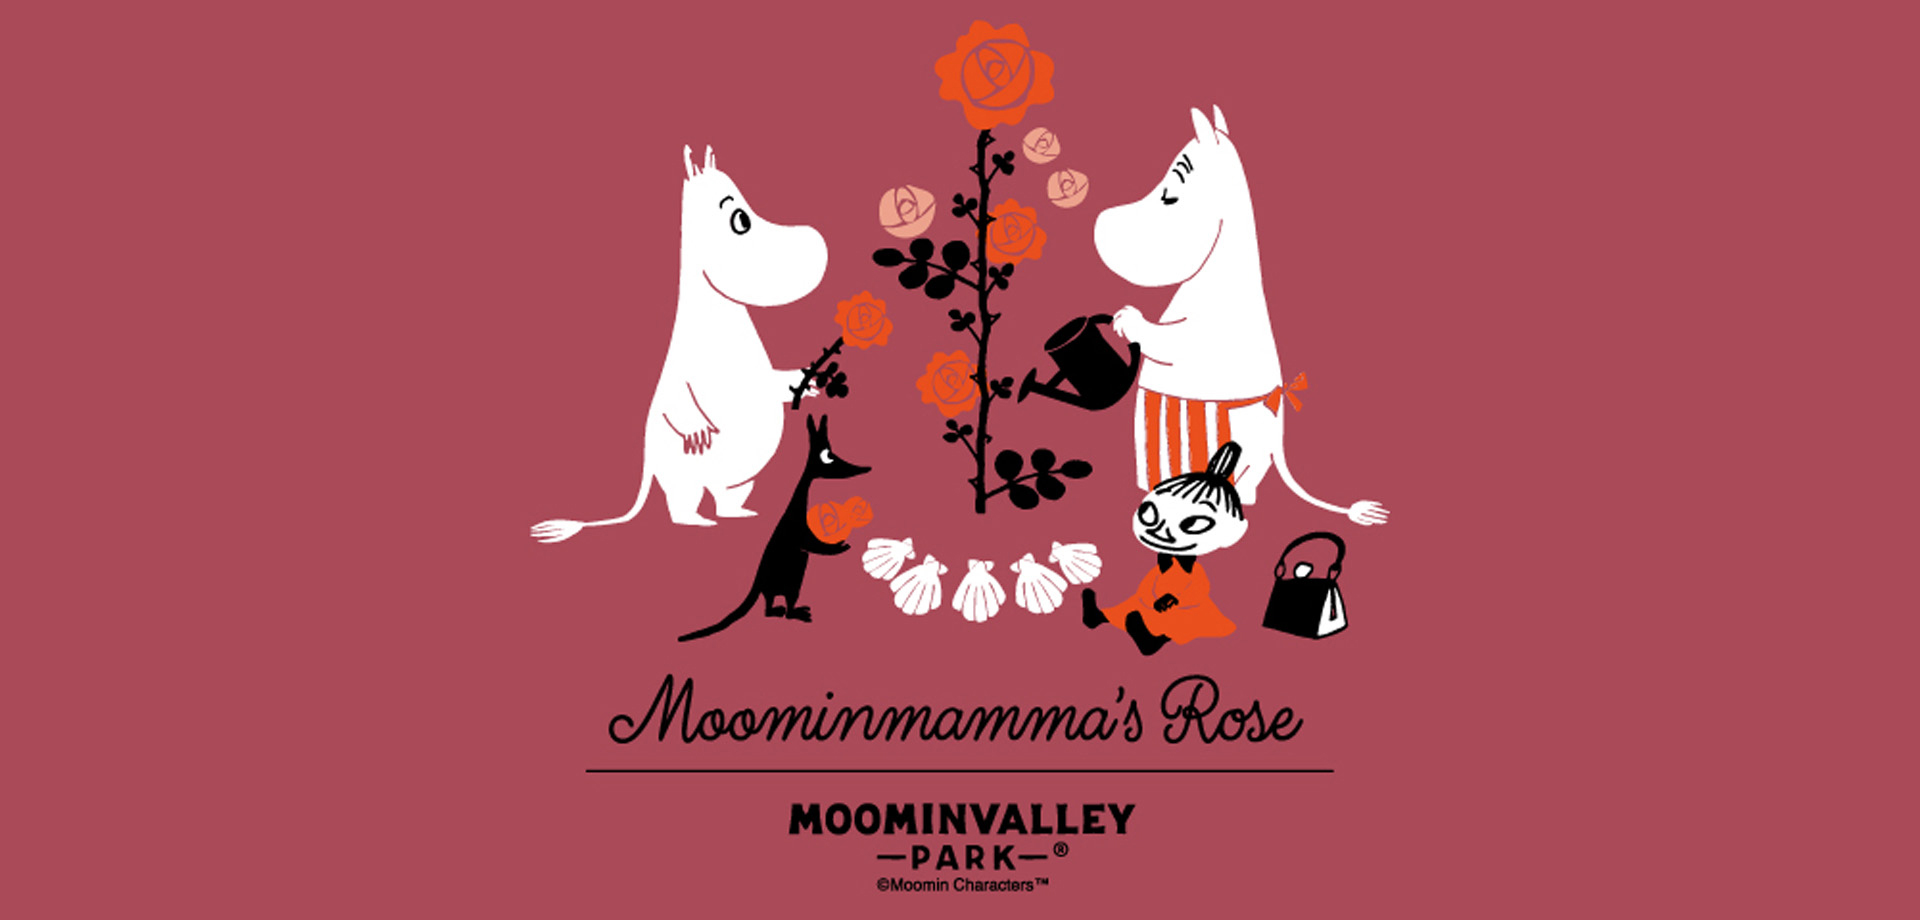 ムーミンバレーパーク「Moominmamma's Rose」